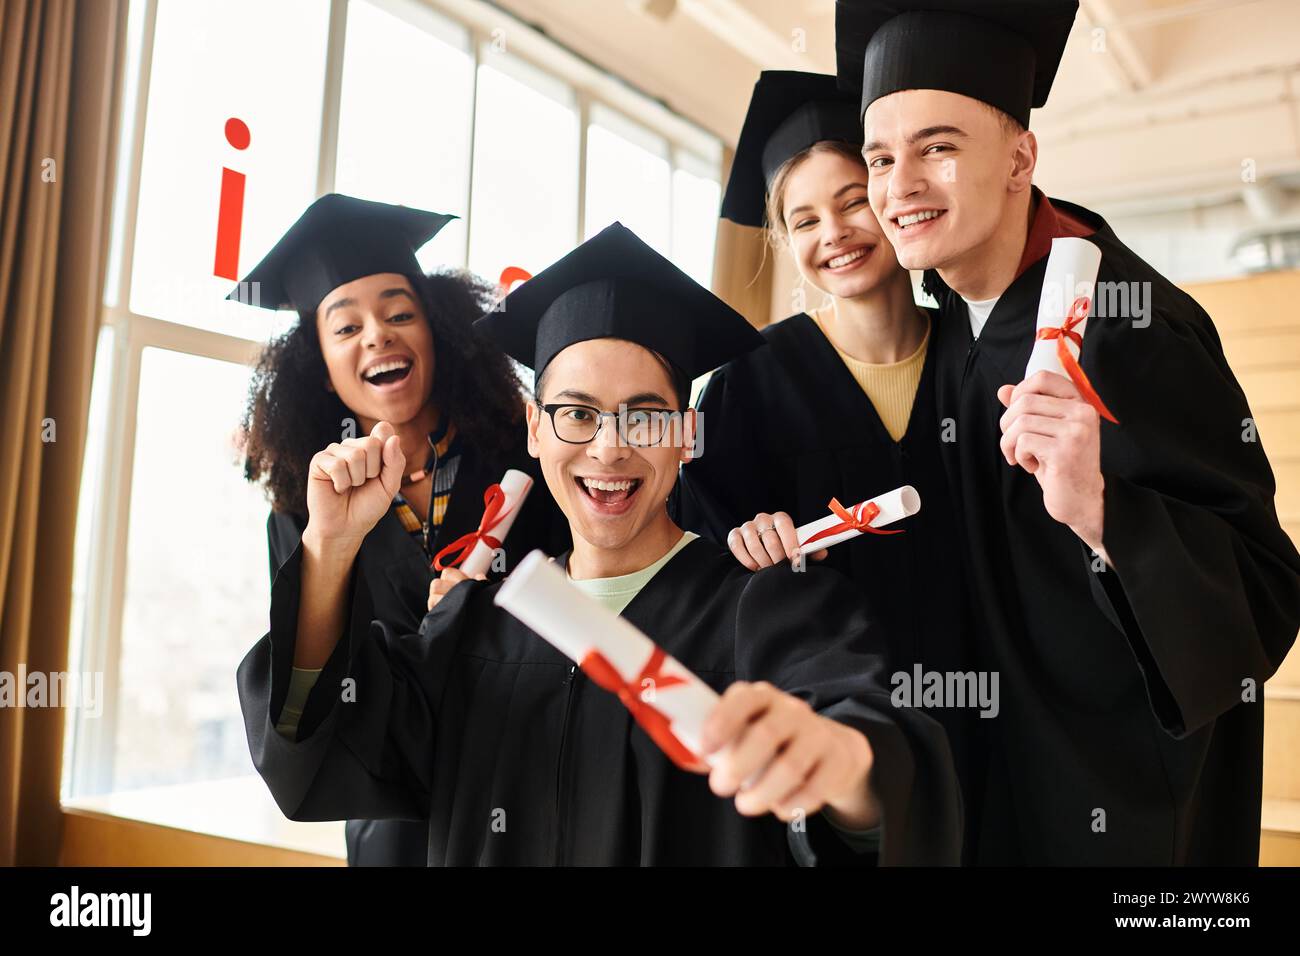 Eine vielfältige Gruppe von Studenten in Abschlusskleidern und -Mützen posiert freudig für ein Foto, um ihren akademischen Erfolg zu gedenken. Stockfoto